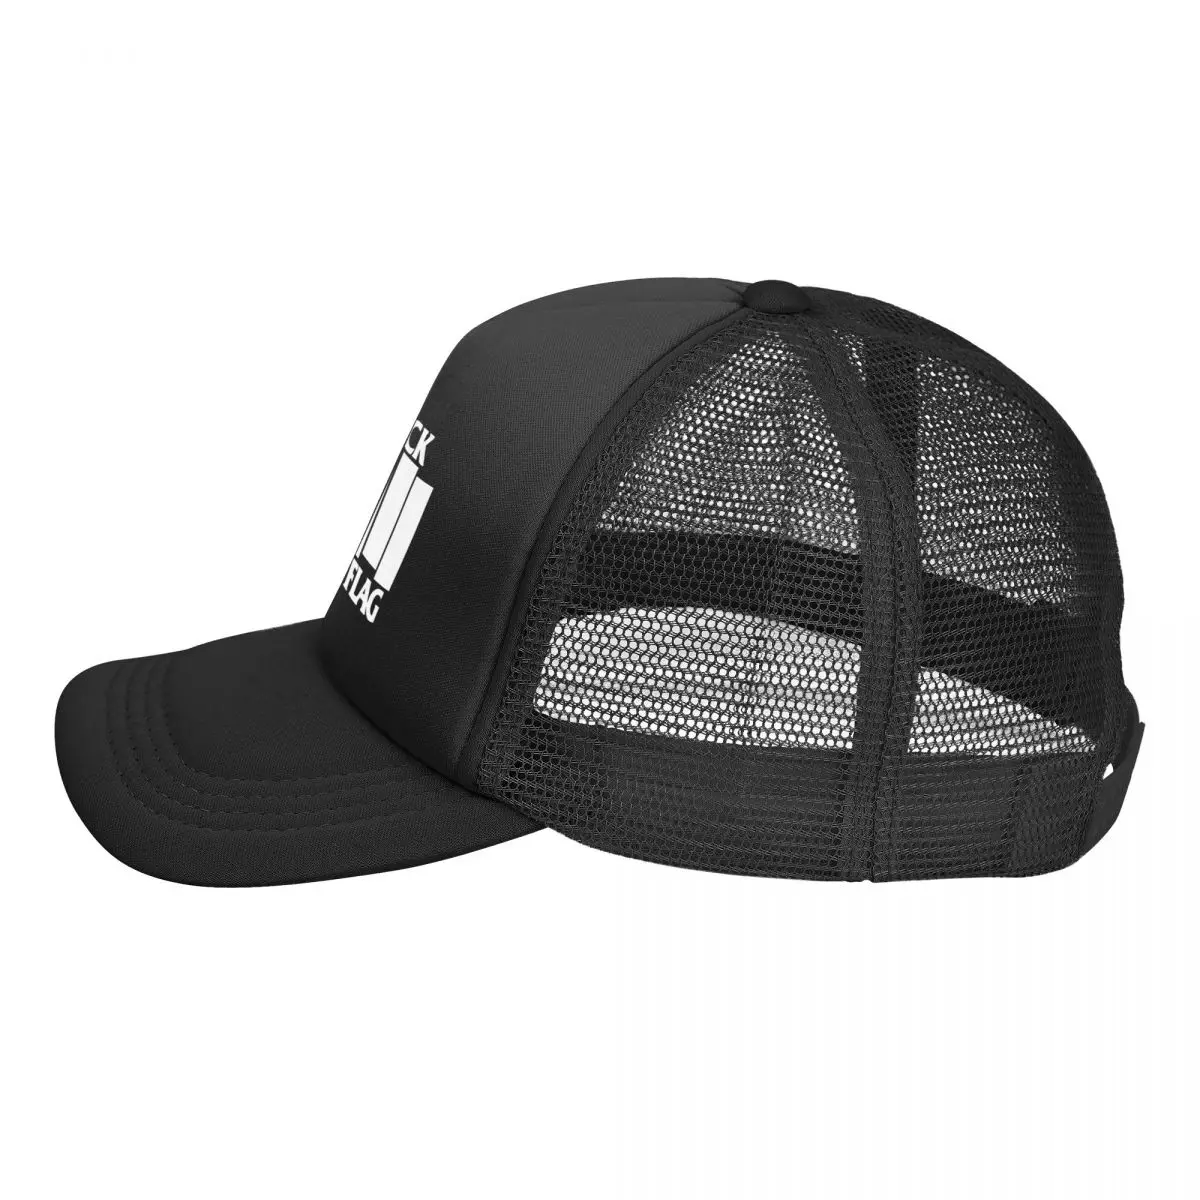 BLACK FLAG Trupa de Rock Original Reglabil Plasă de Trucker Hat pentru Barbati si Femei